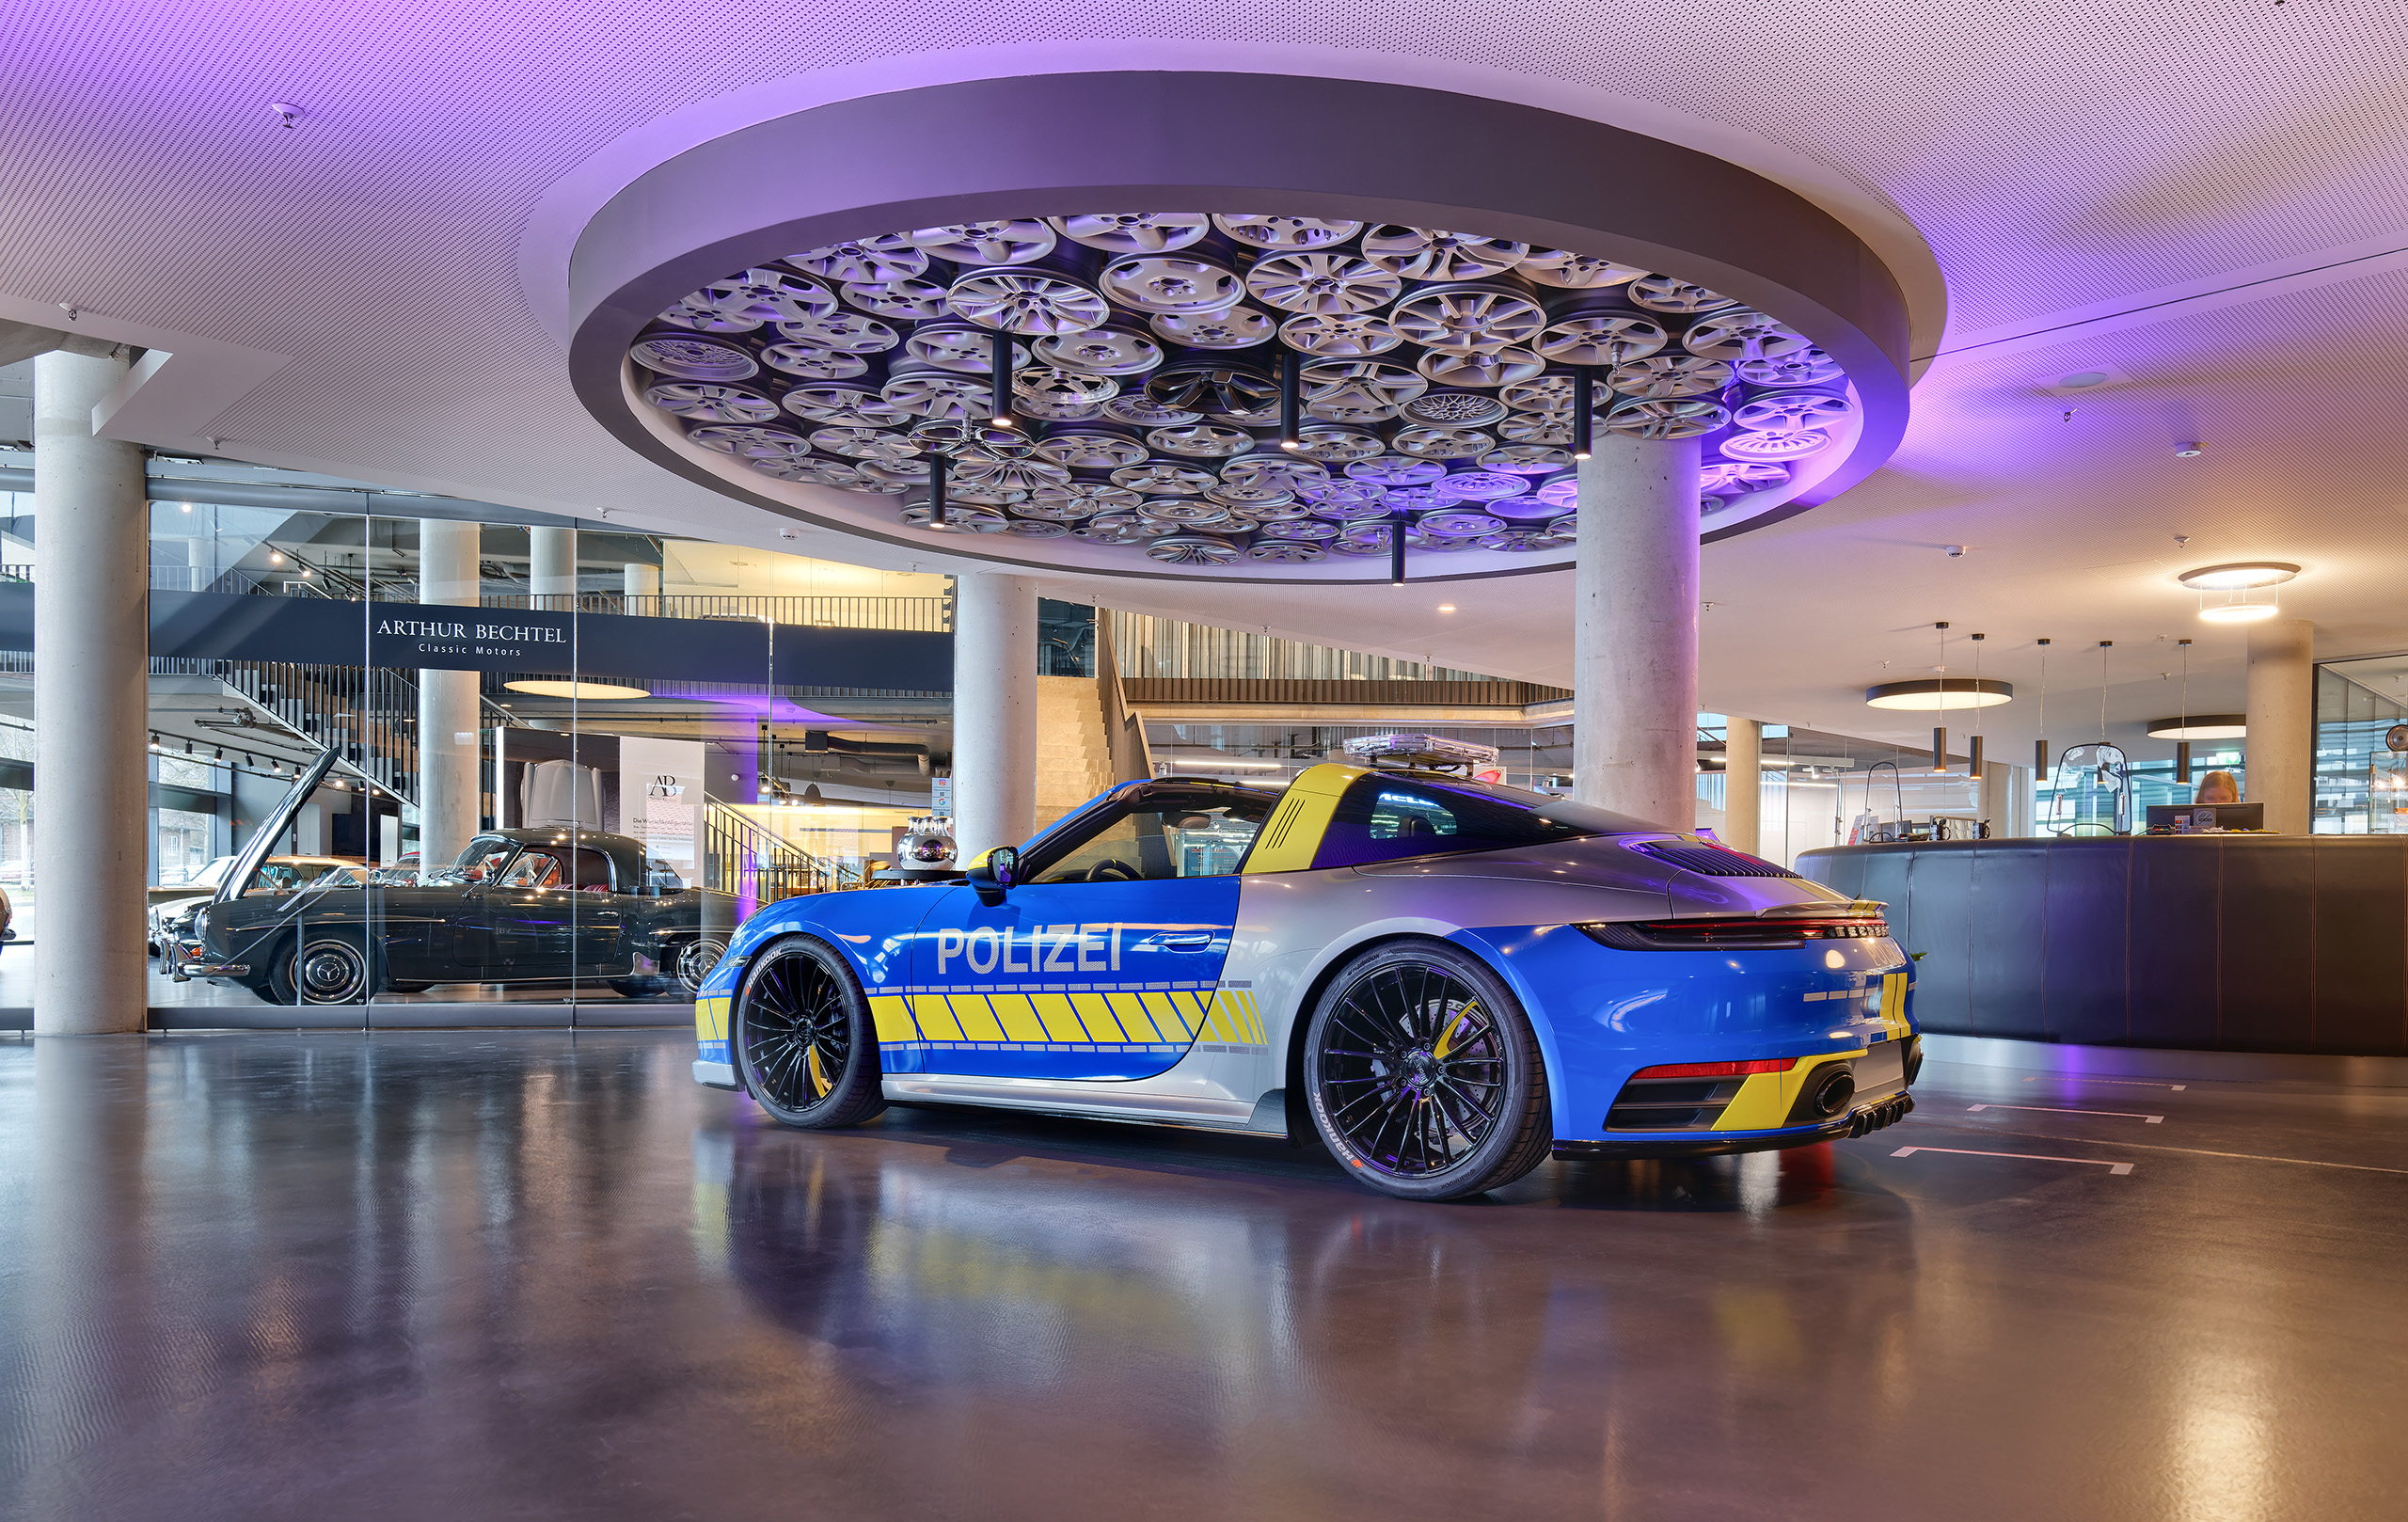 Porsche Polizeiauto in der Lobby vor der runden Rezeption